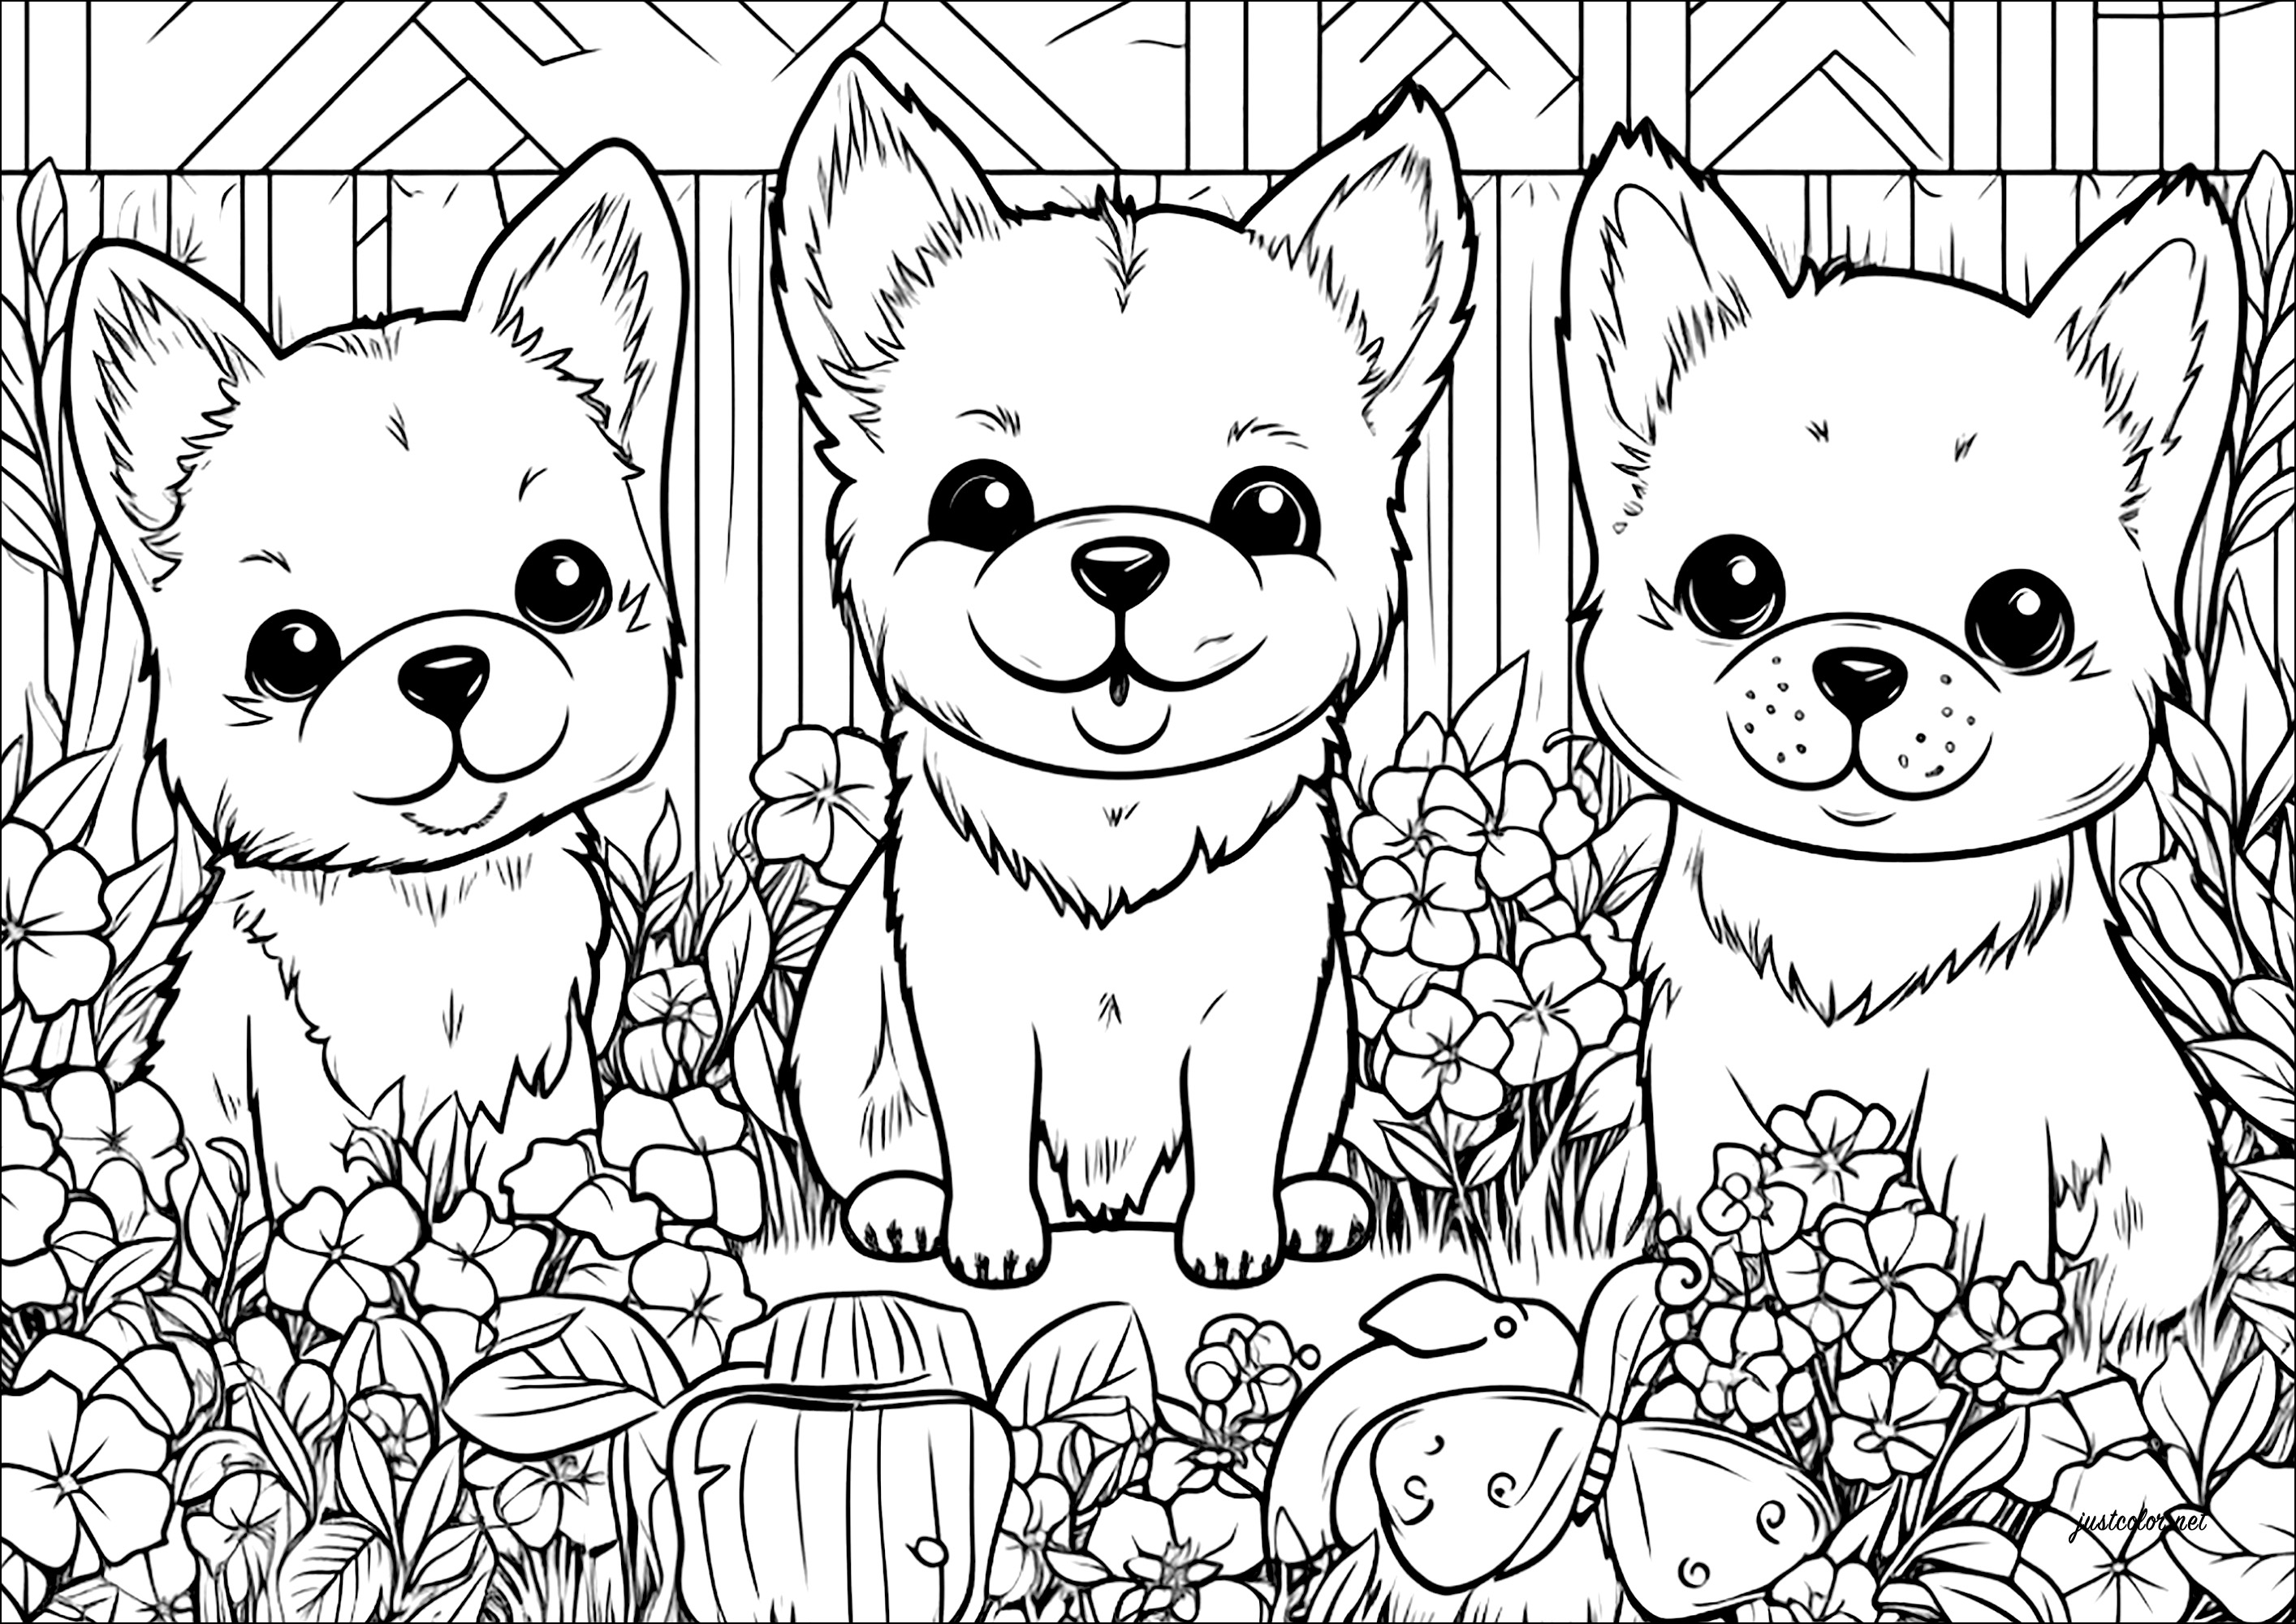 Tre cagnolini in un giardino fiorito. Una simpatica pagina da colorare, con molti dettagli sui fiori e sulla vegetazione del giardino.